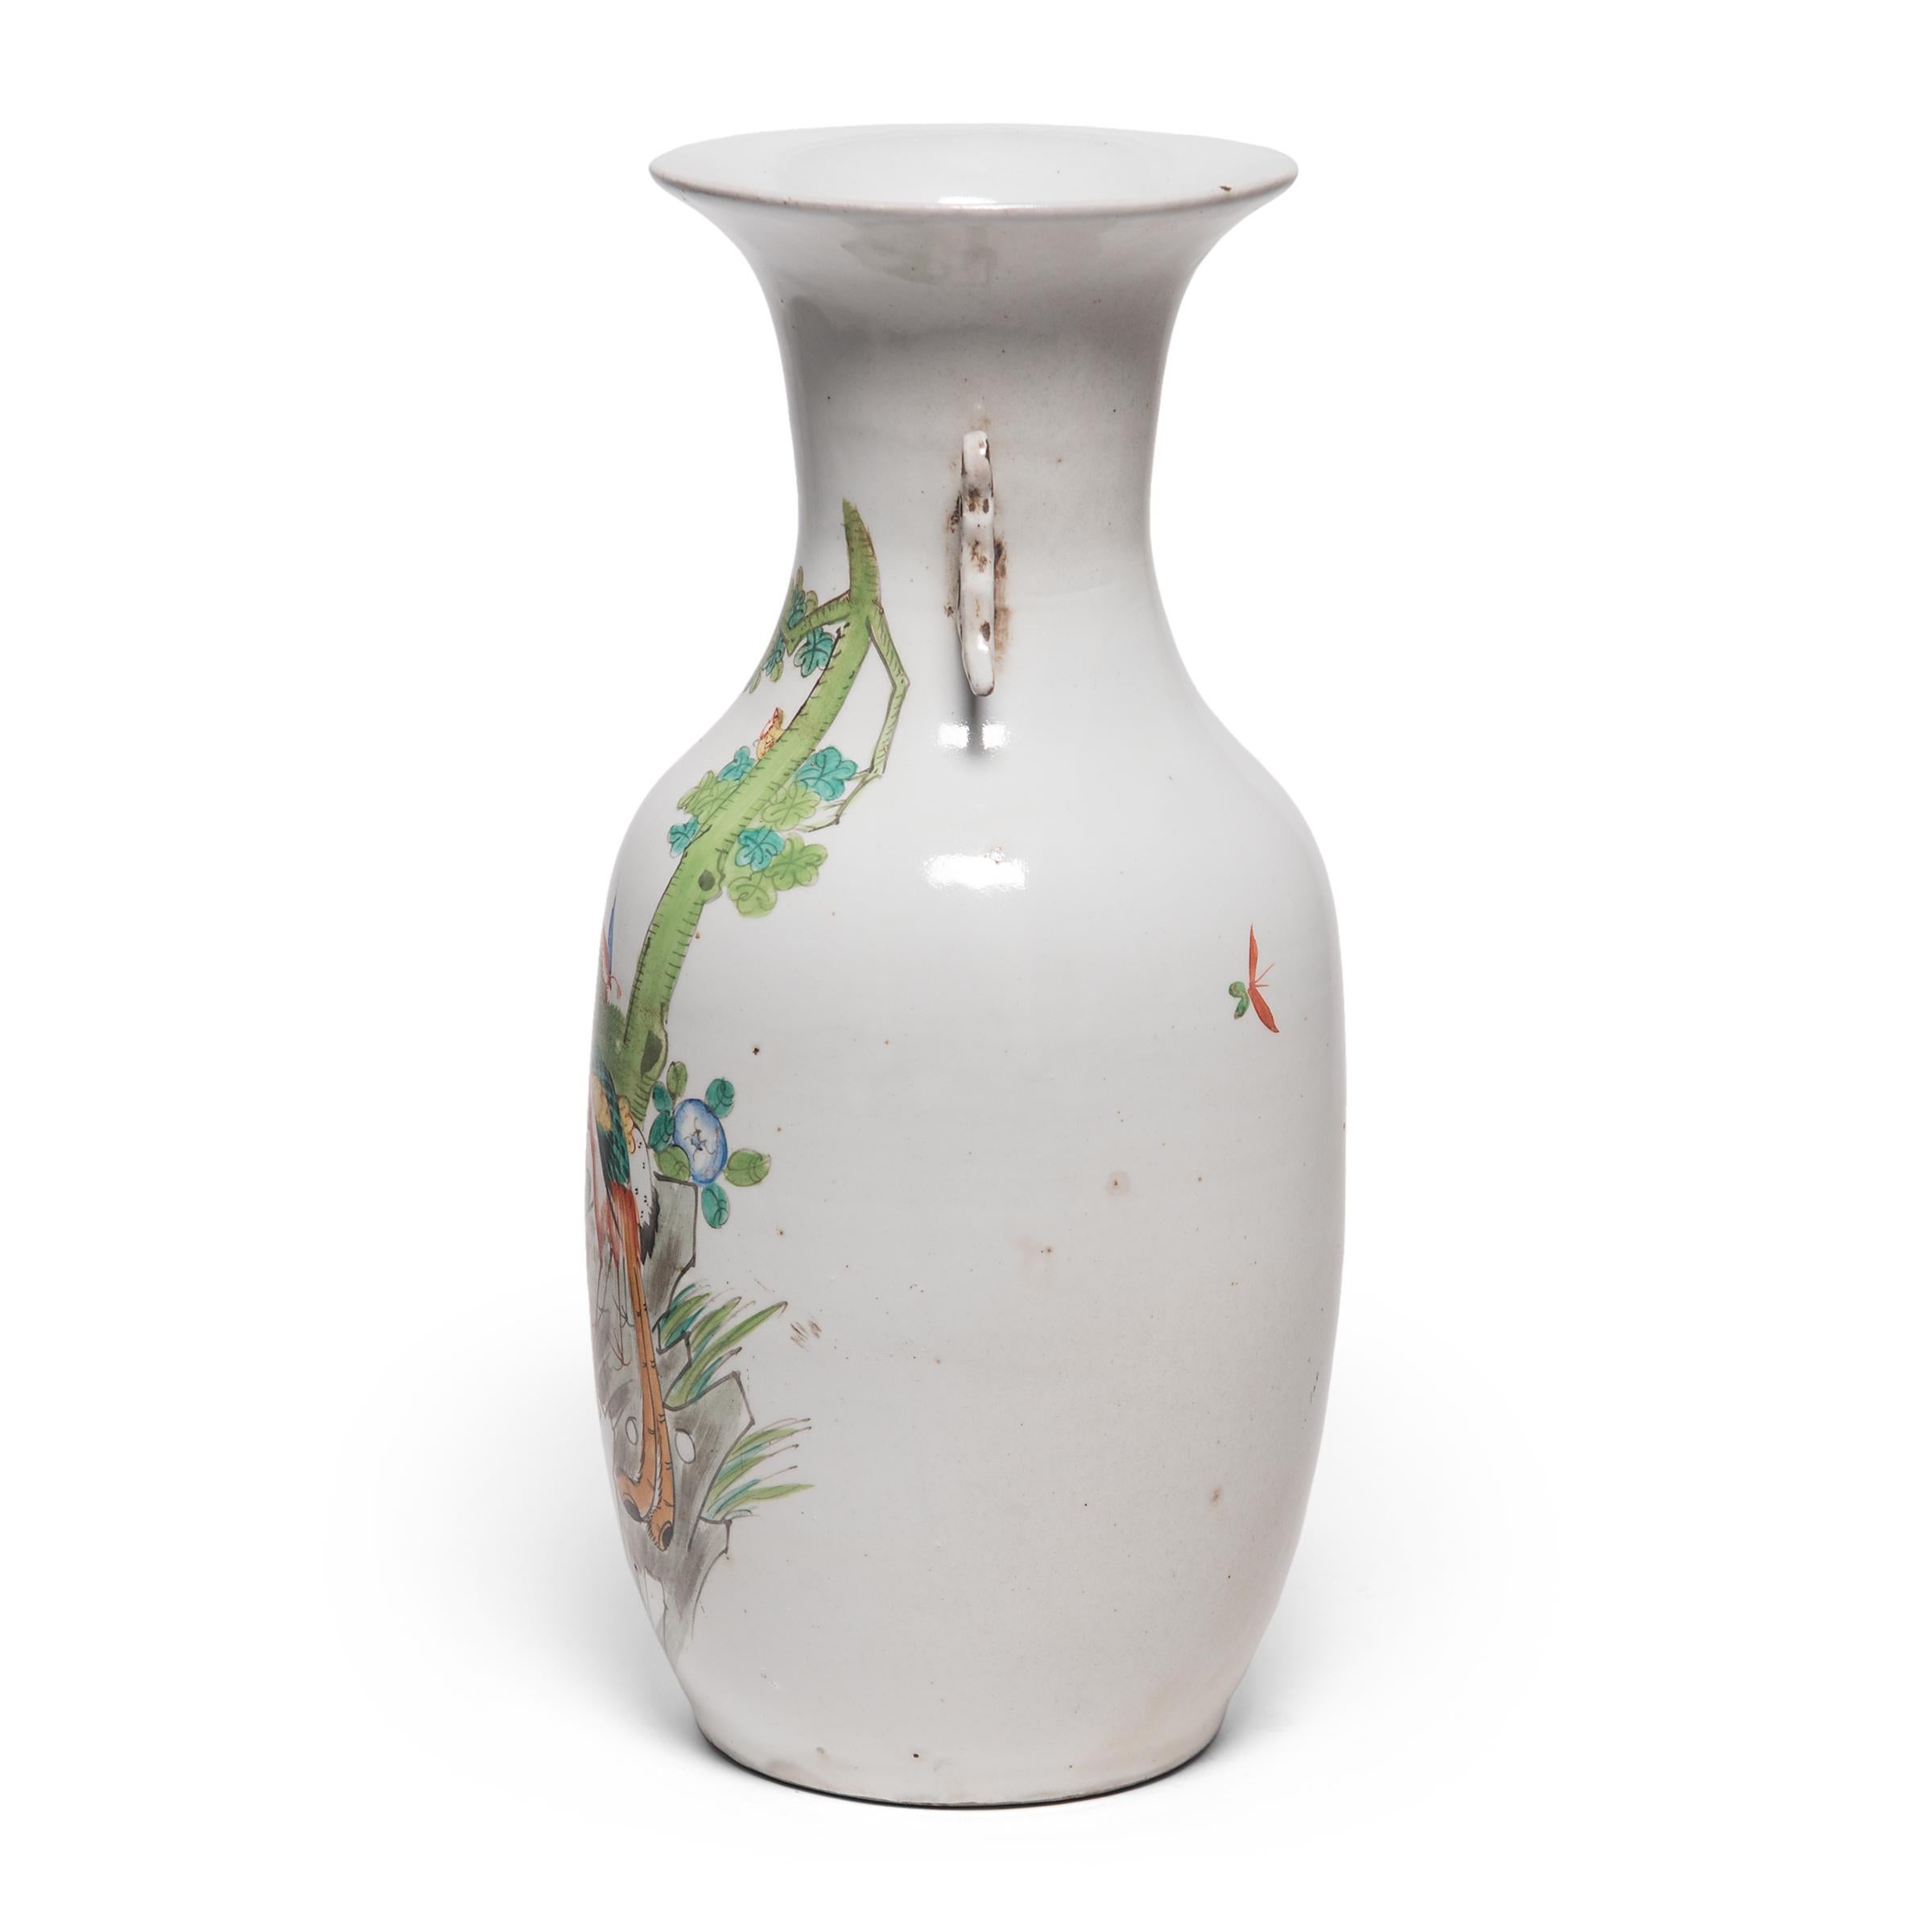 Die Vasenform des Phönixschwanzes geht auf die Bronzezeit zurück und ist wegen ihrer klaren Linien und anmutigen Kurven bis heute beliebt. Diese hohe Vase wurde Anfang des 20. Jahrhunderts geschaffen und zeigt einen stilisierten Phönix in einem